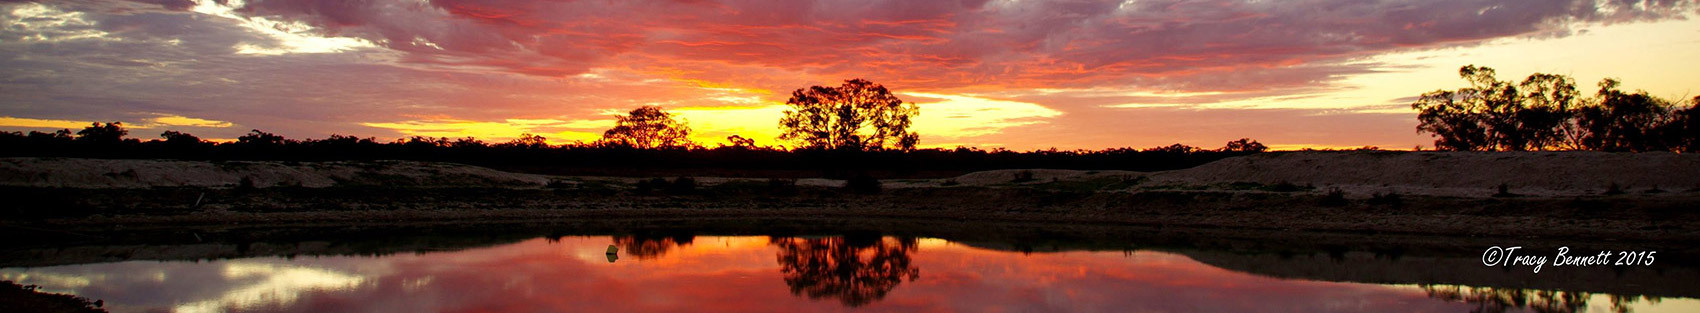 outback-sunset-poets-corner